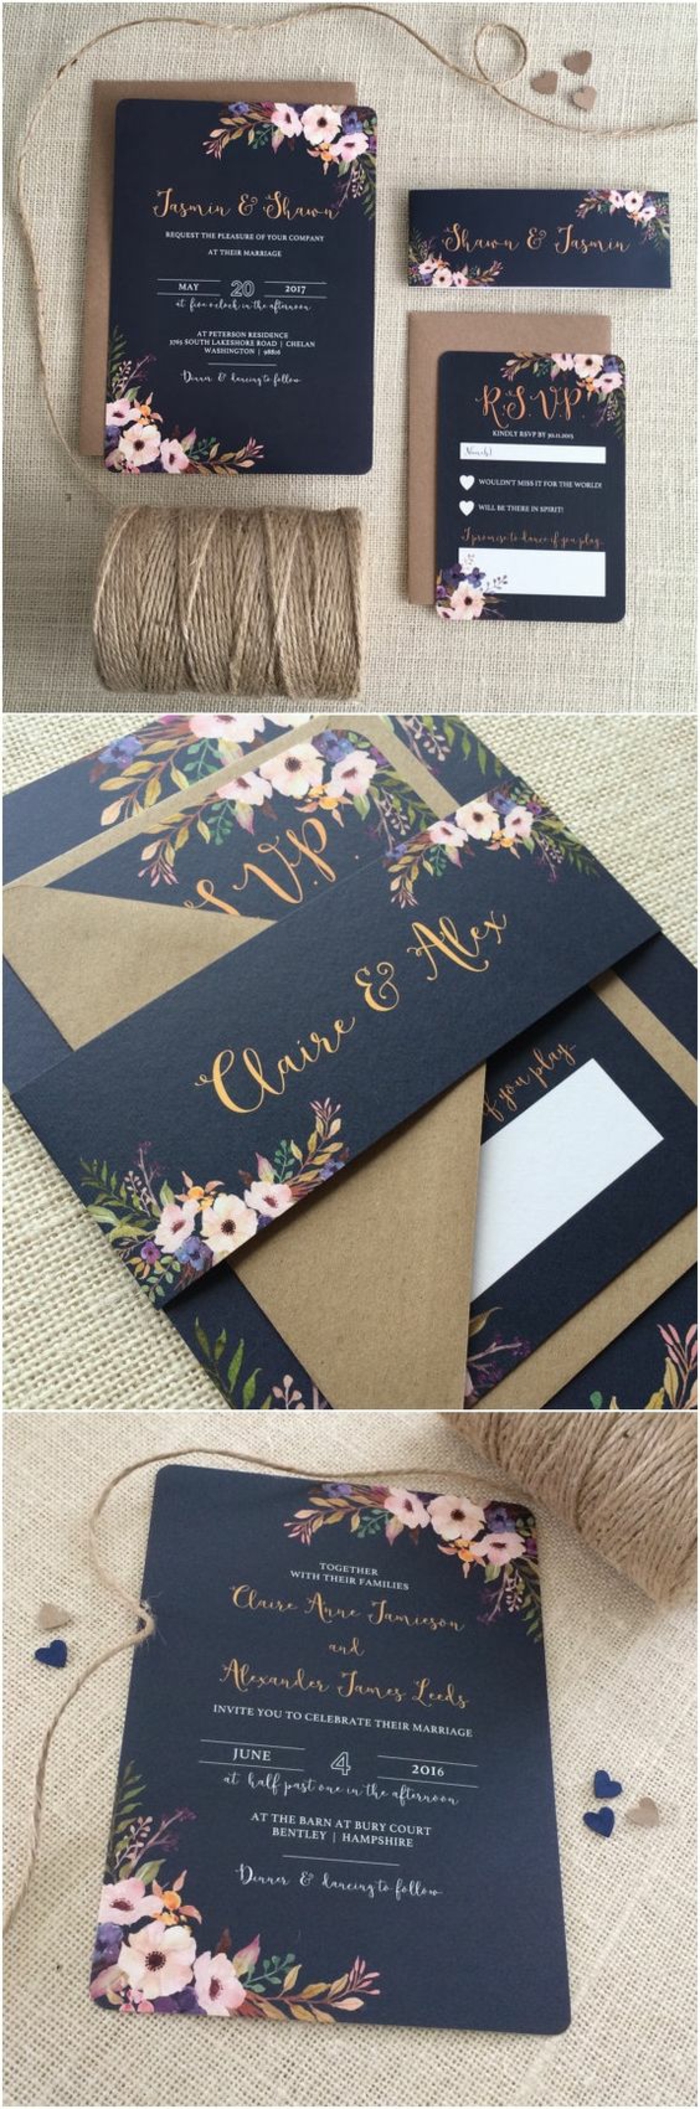 invitaciones de boda vintage, invitación de boda en azul oscuro con letras en dorado, decoración con flores y sobre de papel kraft